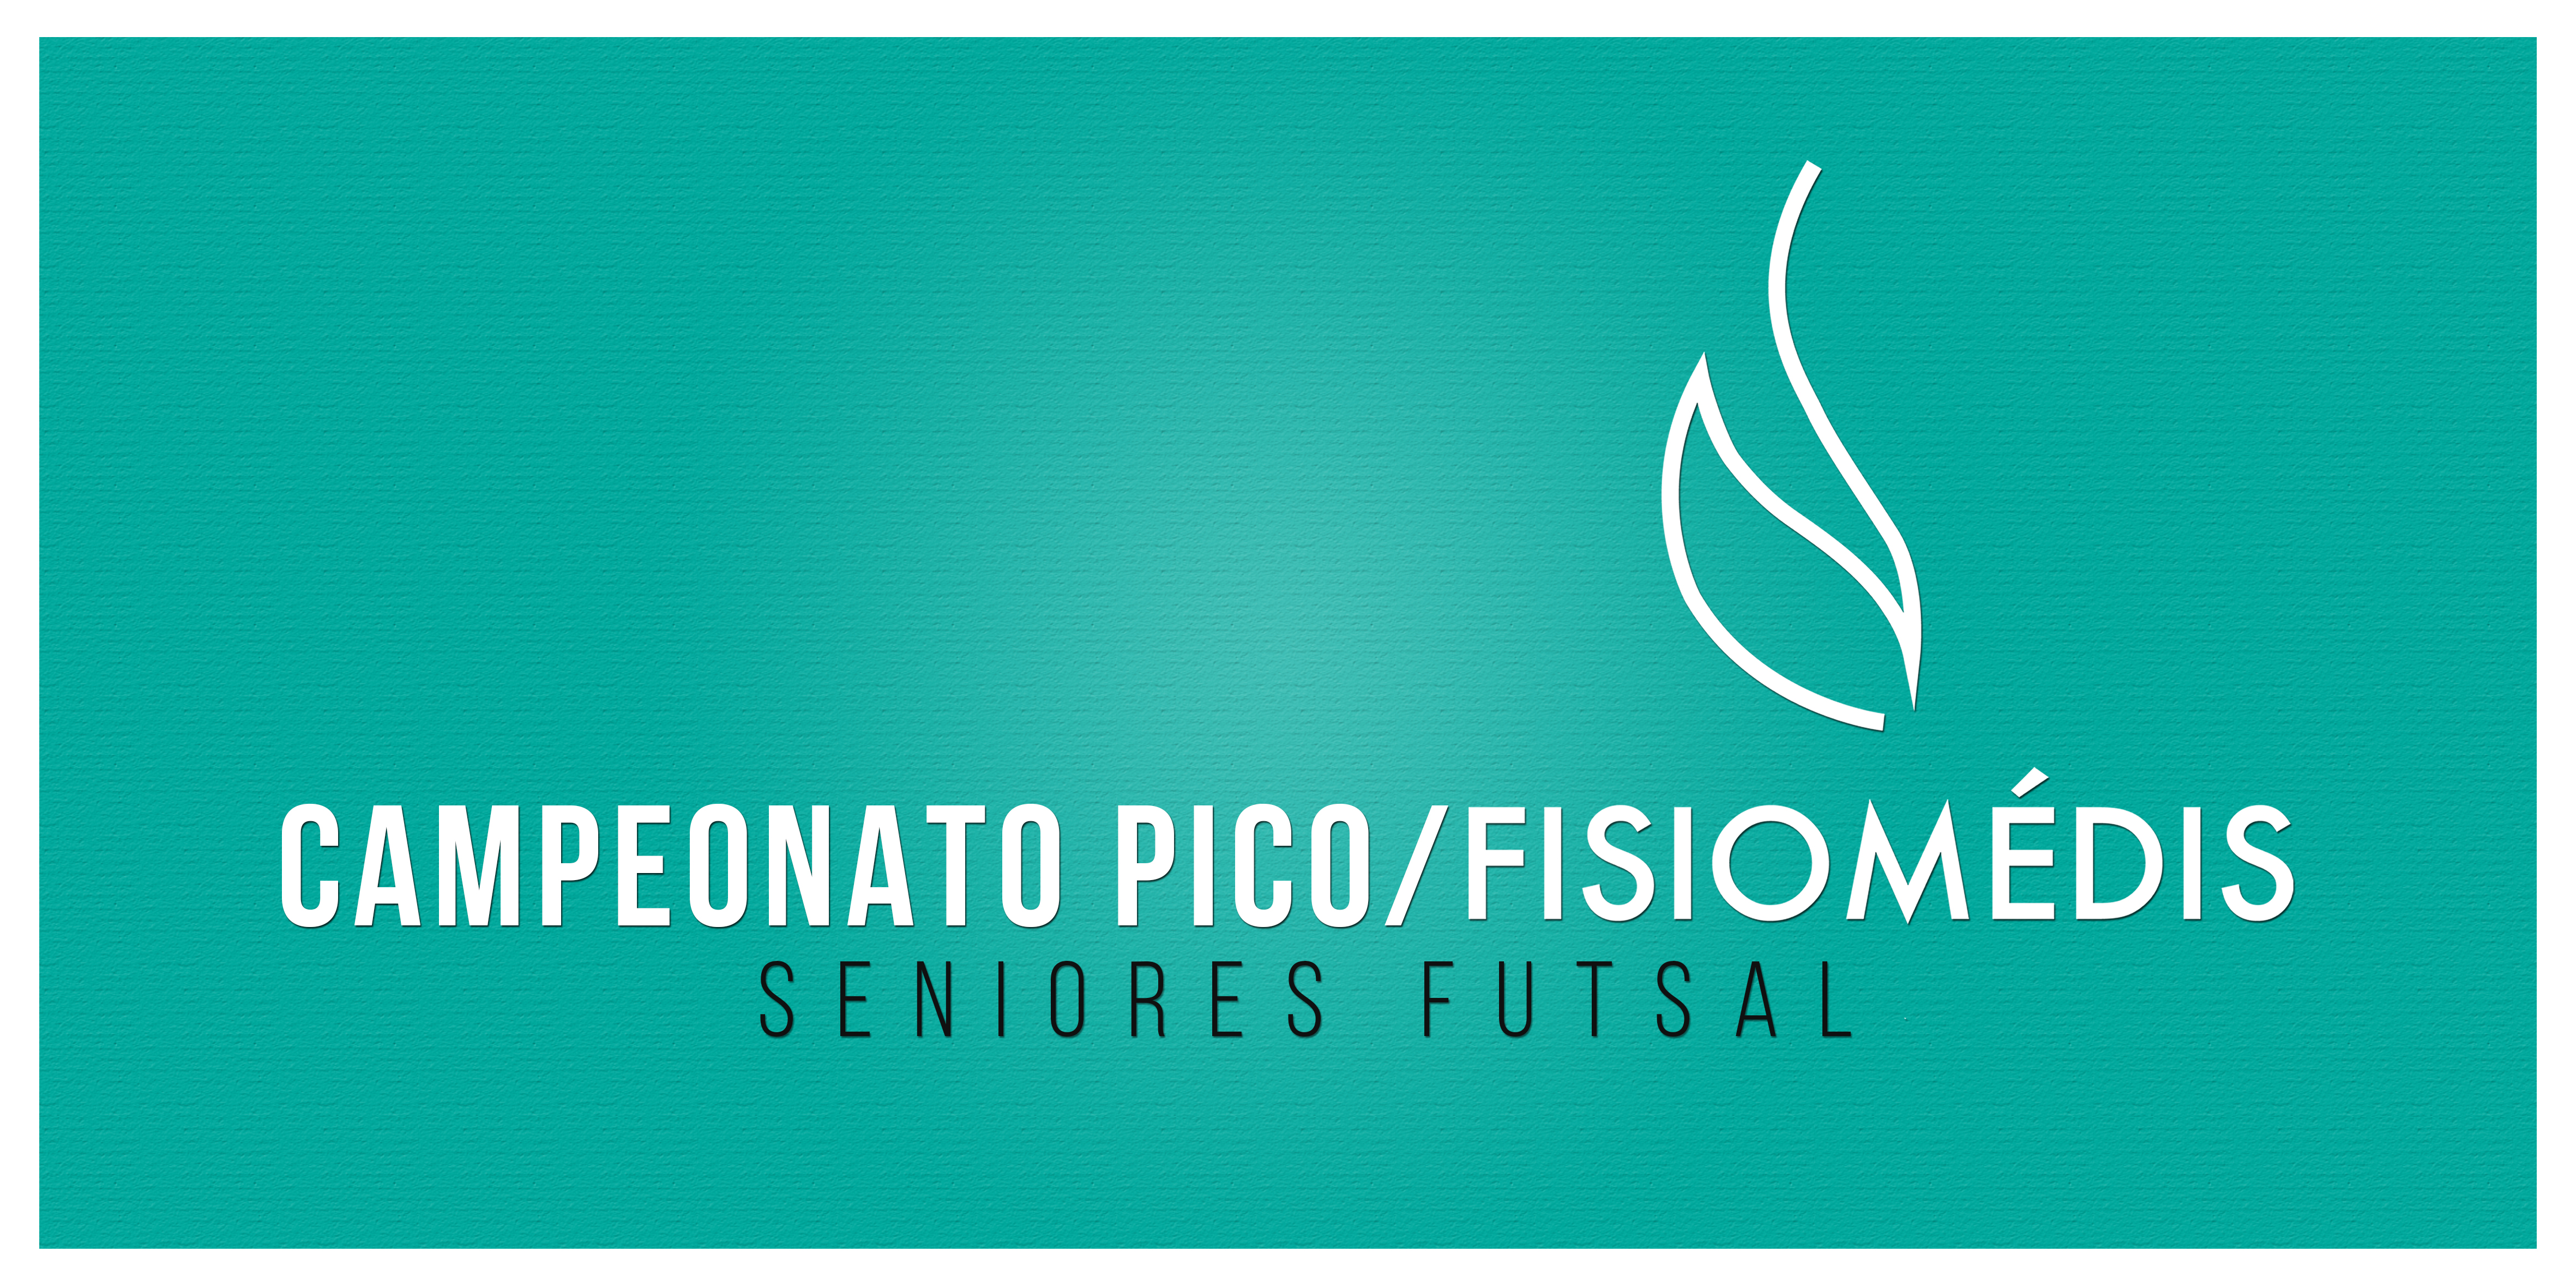 FisioMédis patrocina Campeonato do Pico de Seniores Futsal